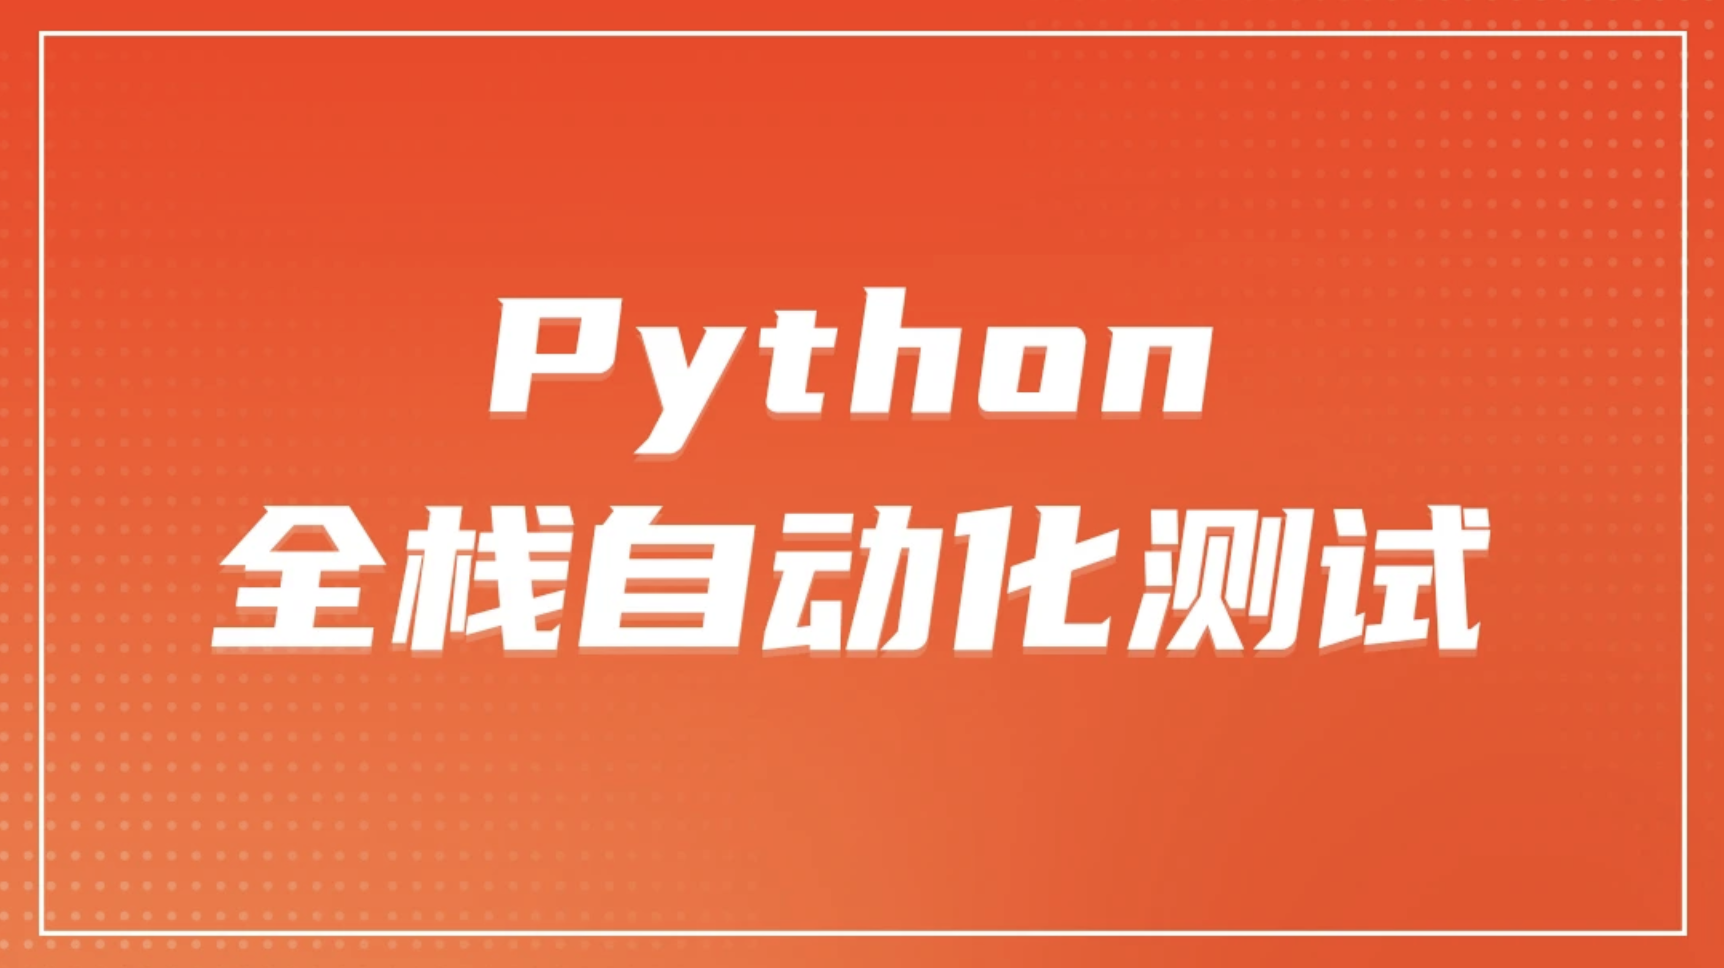 柠檬 软件测试之python全栈自动化测试工程师第52期|资料齐全